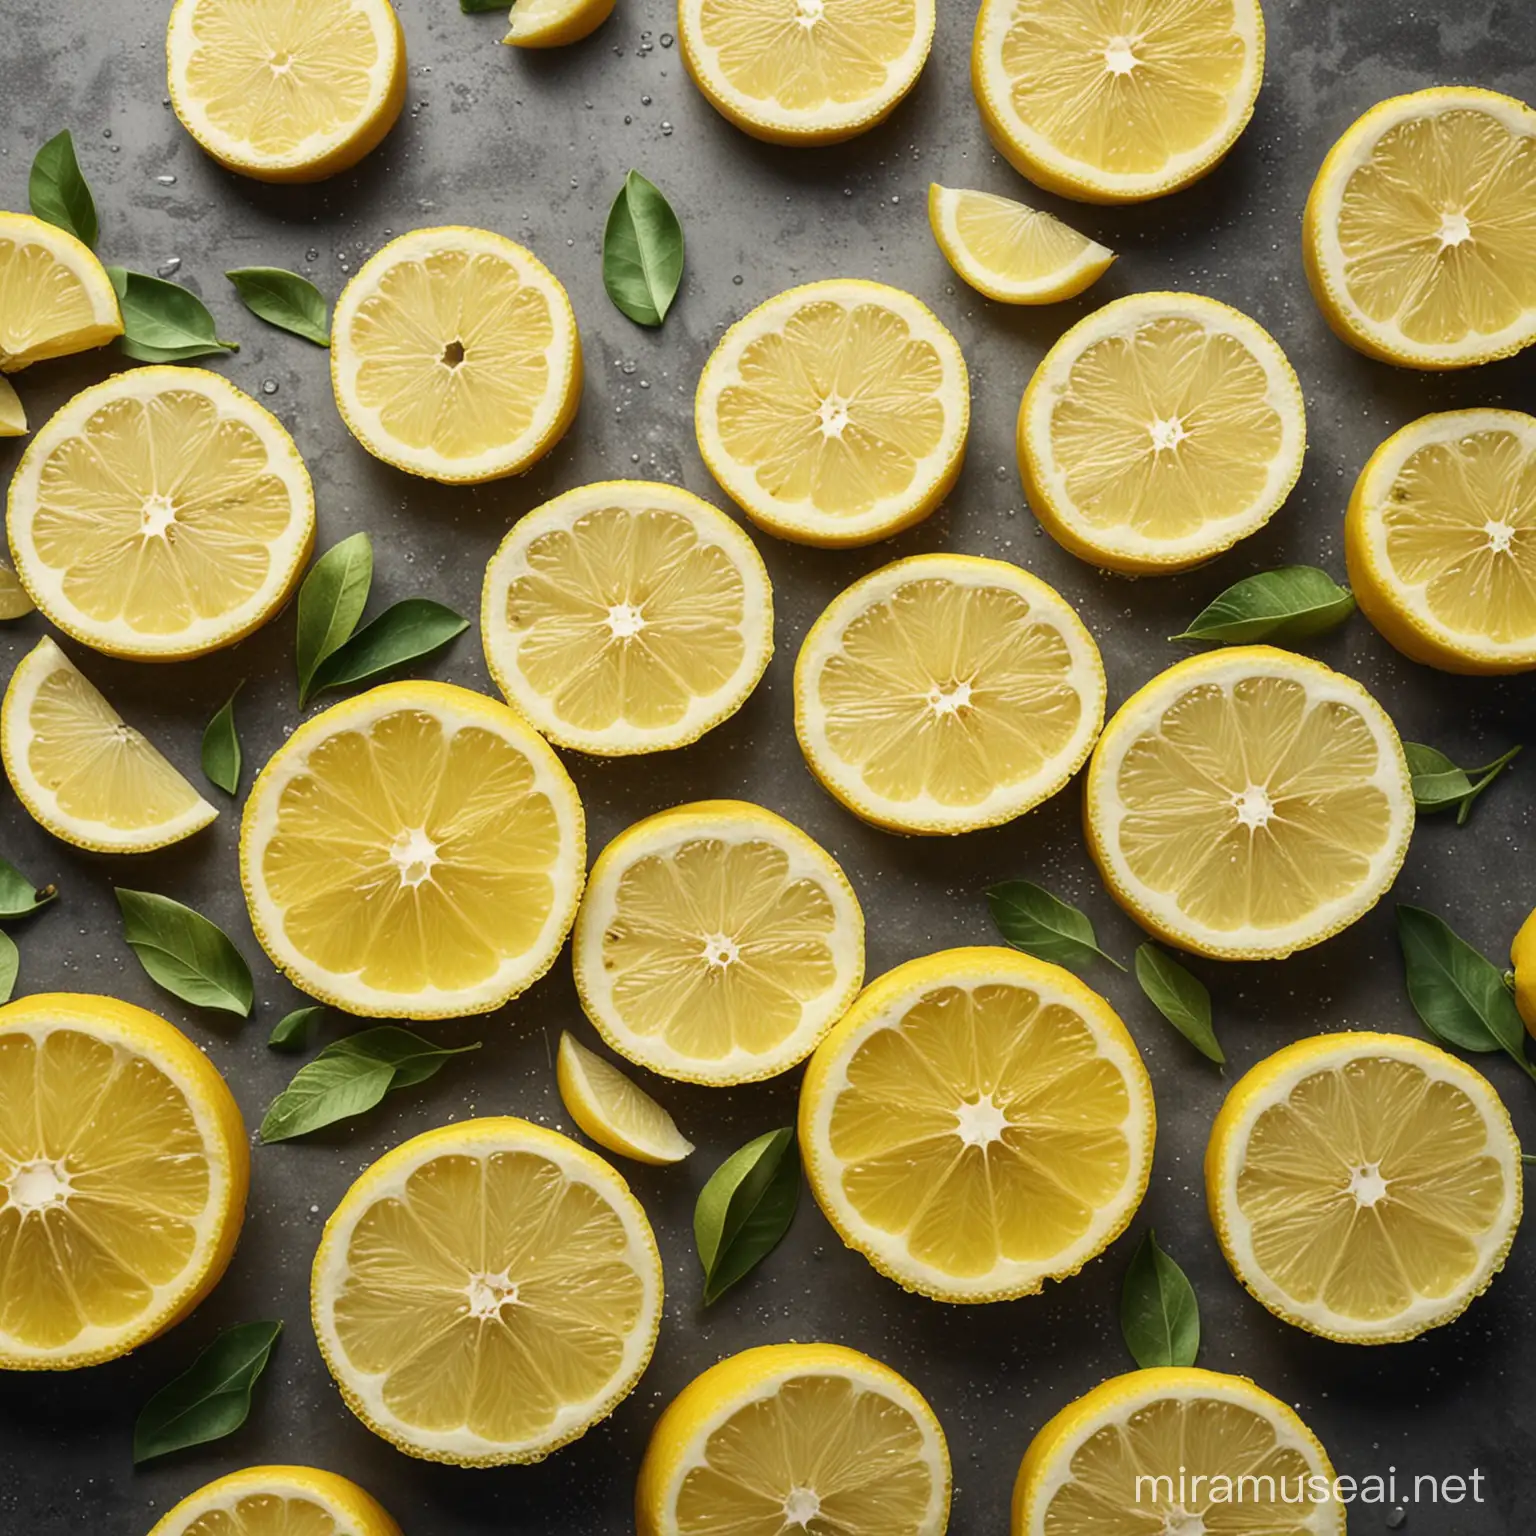 Vibrant Lemon Slices Arrangement Refreshing Citrus Delight for Summertime